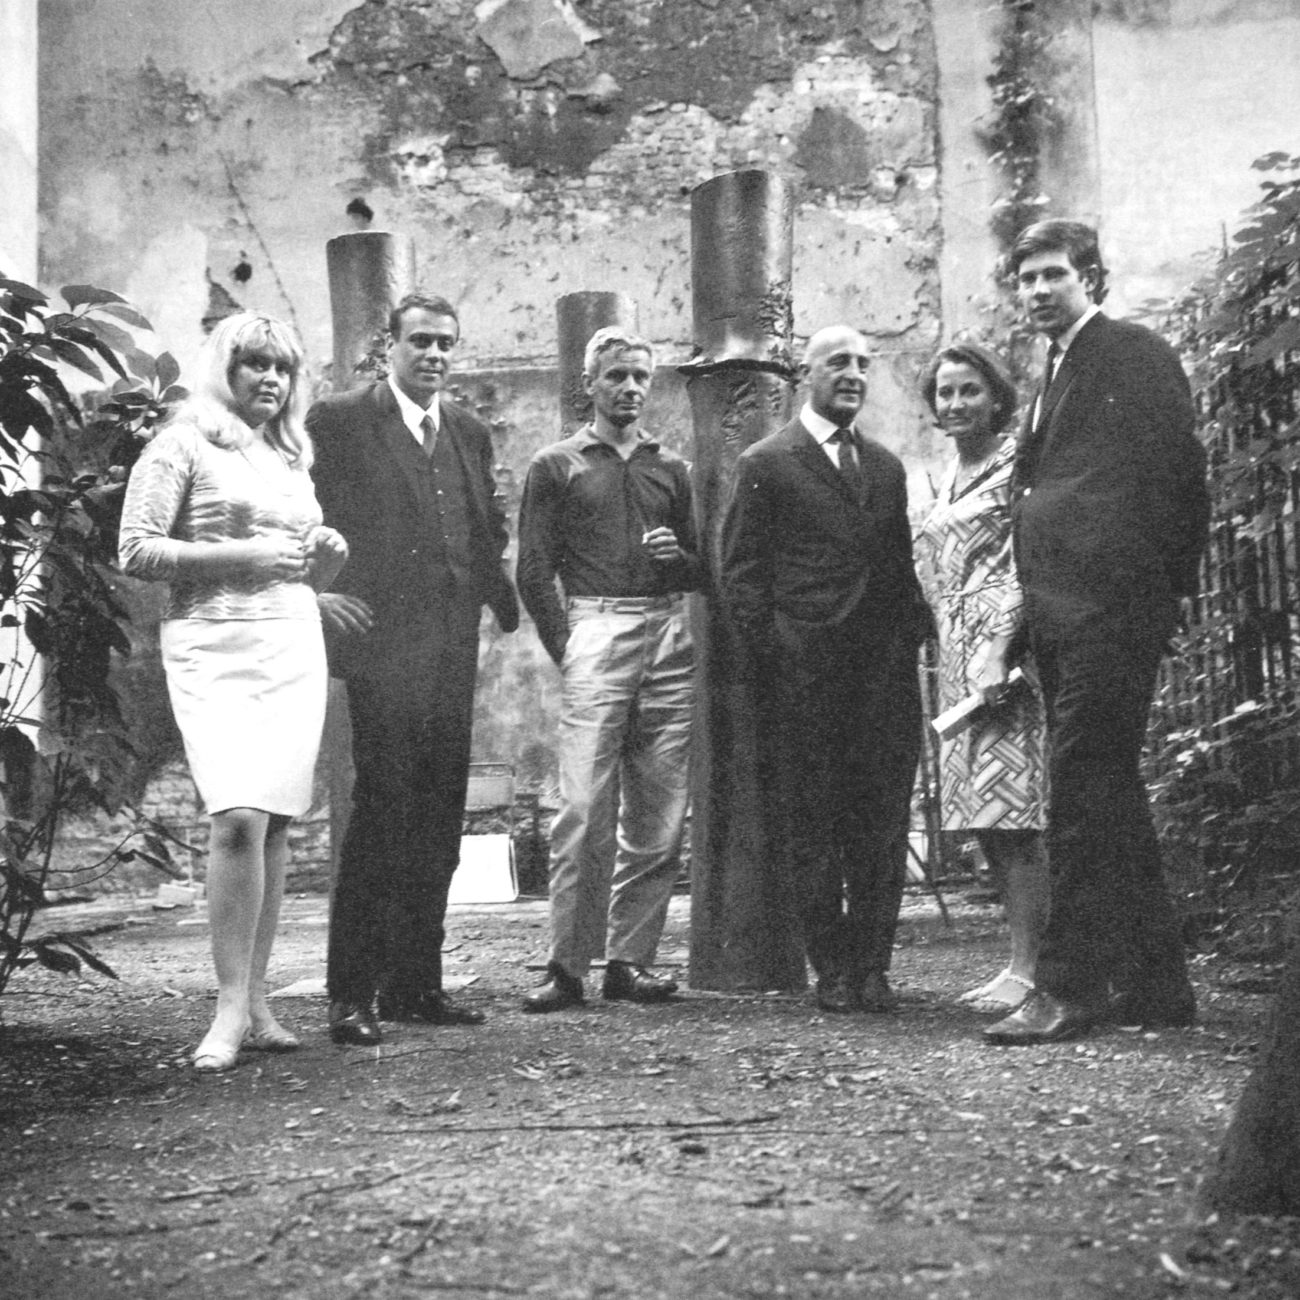 Lucio Fontana's art studio, Nanda Vigo con Gunther Uecker, Enrico Castellani, Gillo Dorfles, Beatrice and Pio Monti, Courtesy of Nanda Vigo Archive